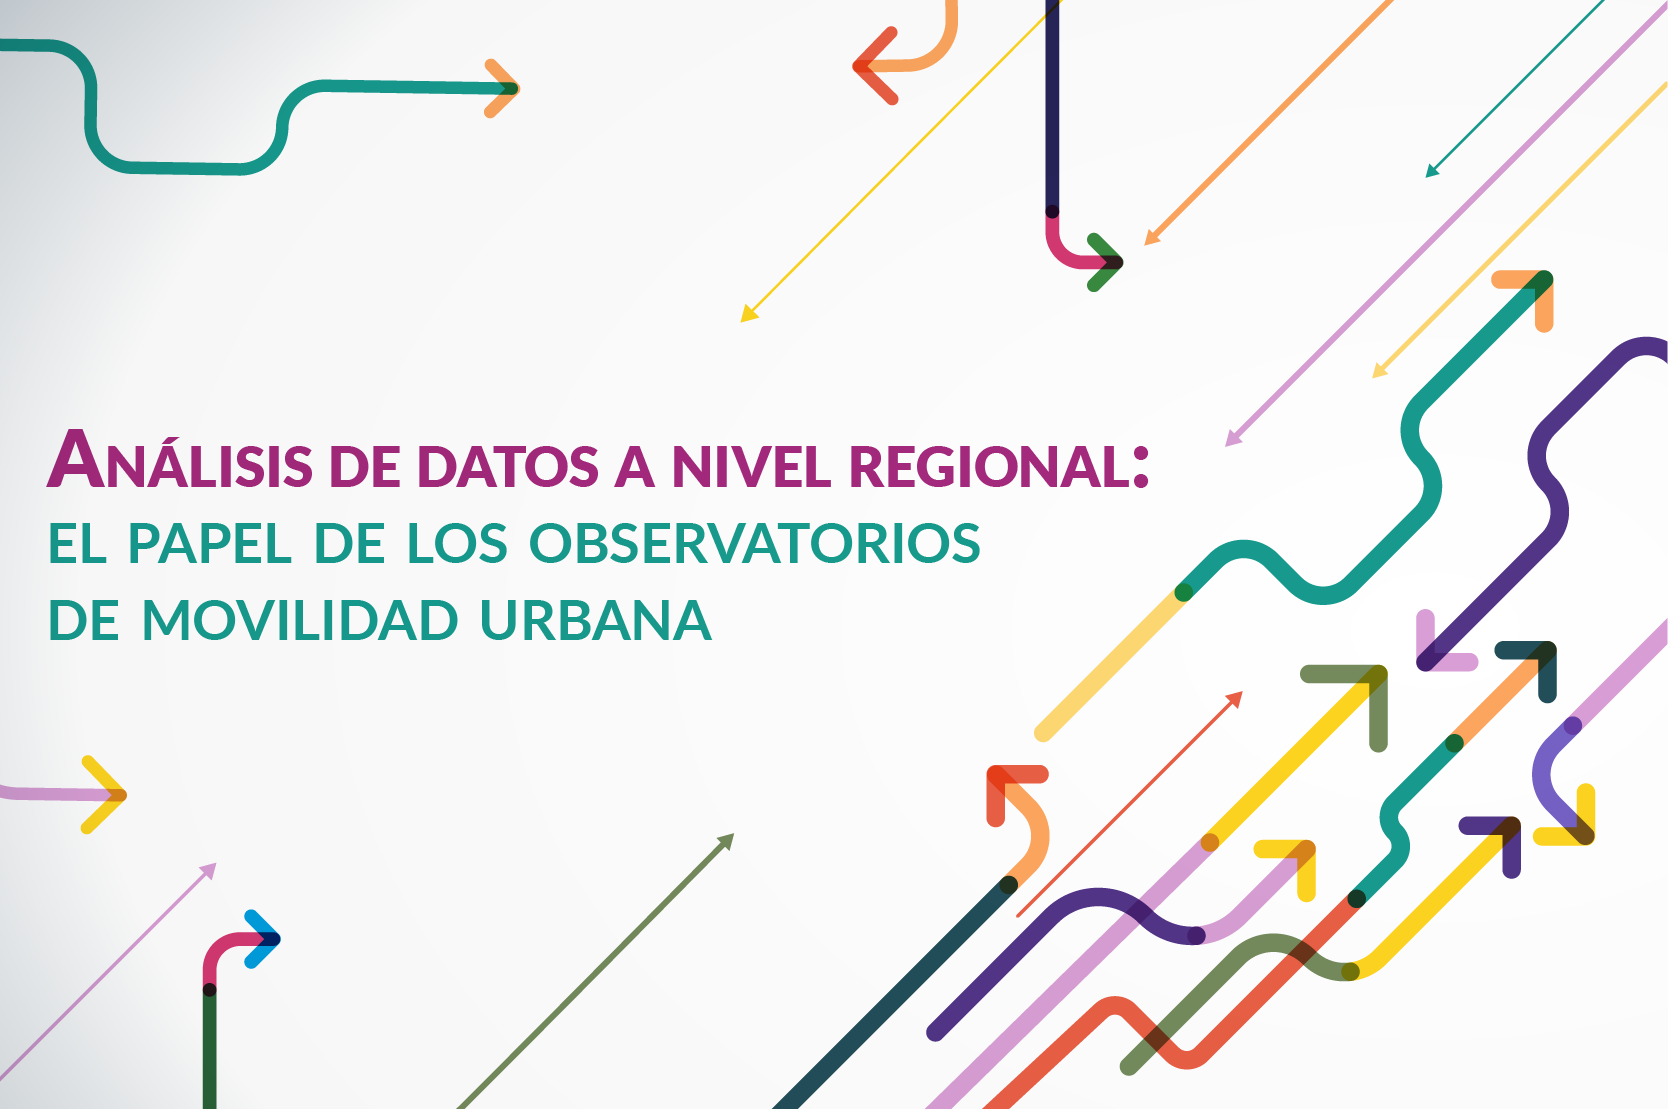 Evento de observatorios de movilidad urbana en Latinoamérica